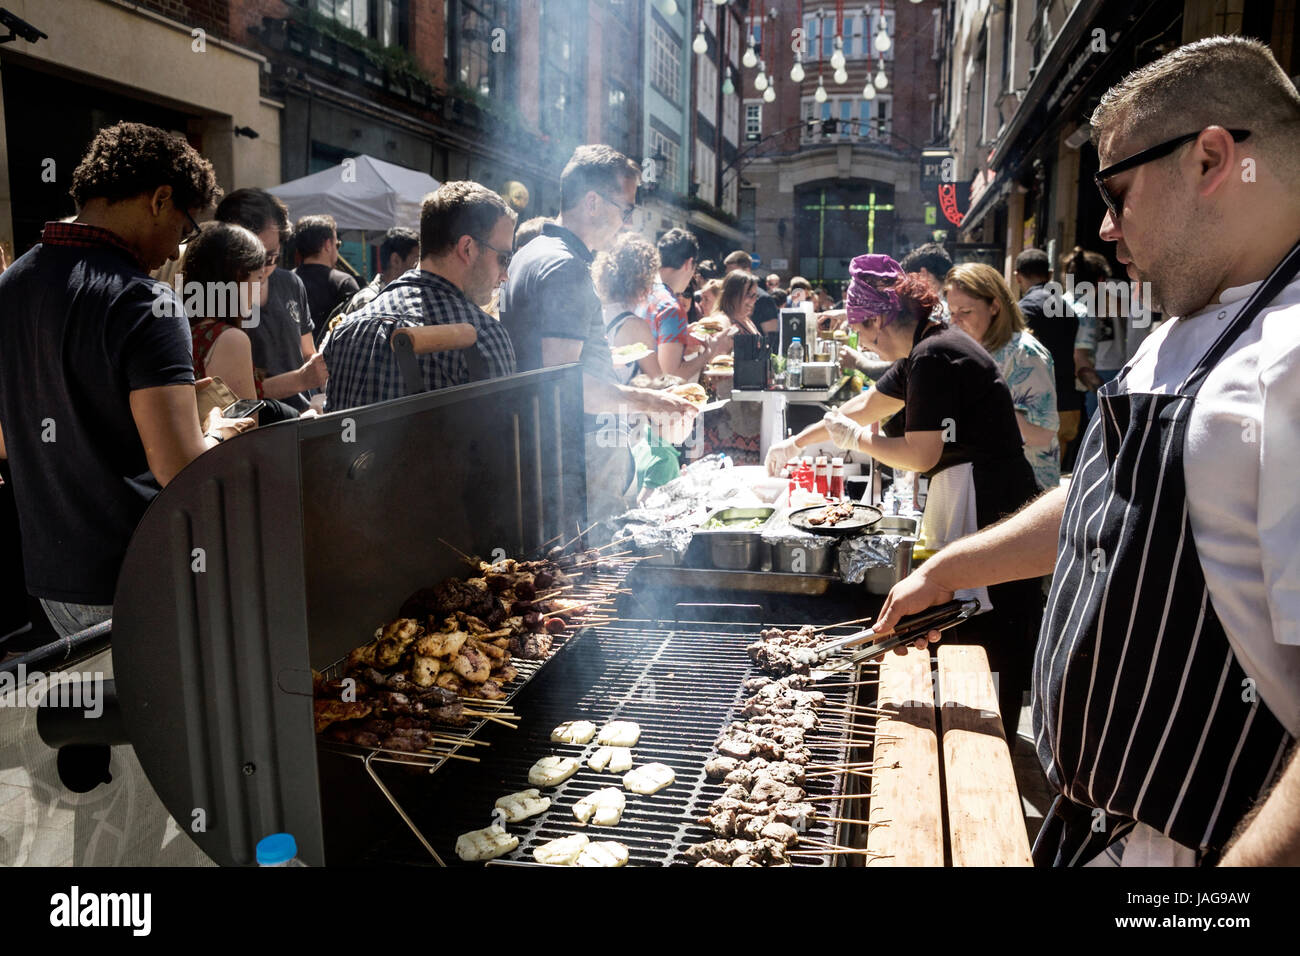 A street food festival in Carnaby Street London: “Carnaby Street Eat”. London street food London. Street food UK street food. Stock Photo